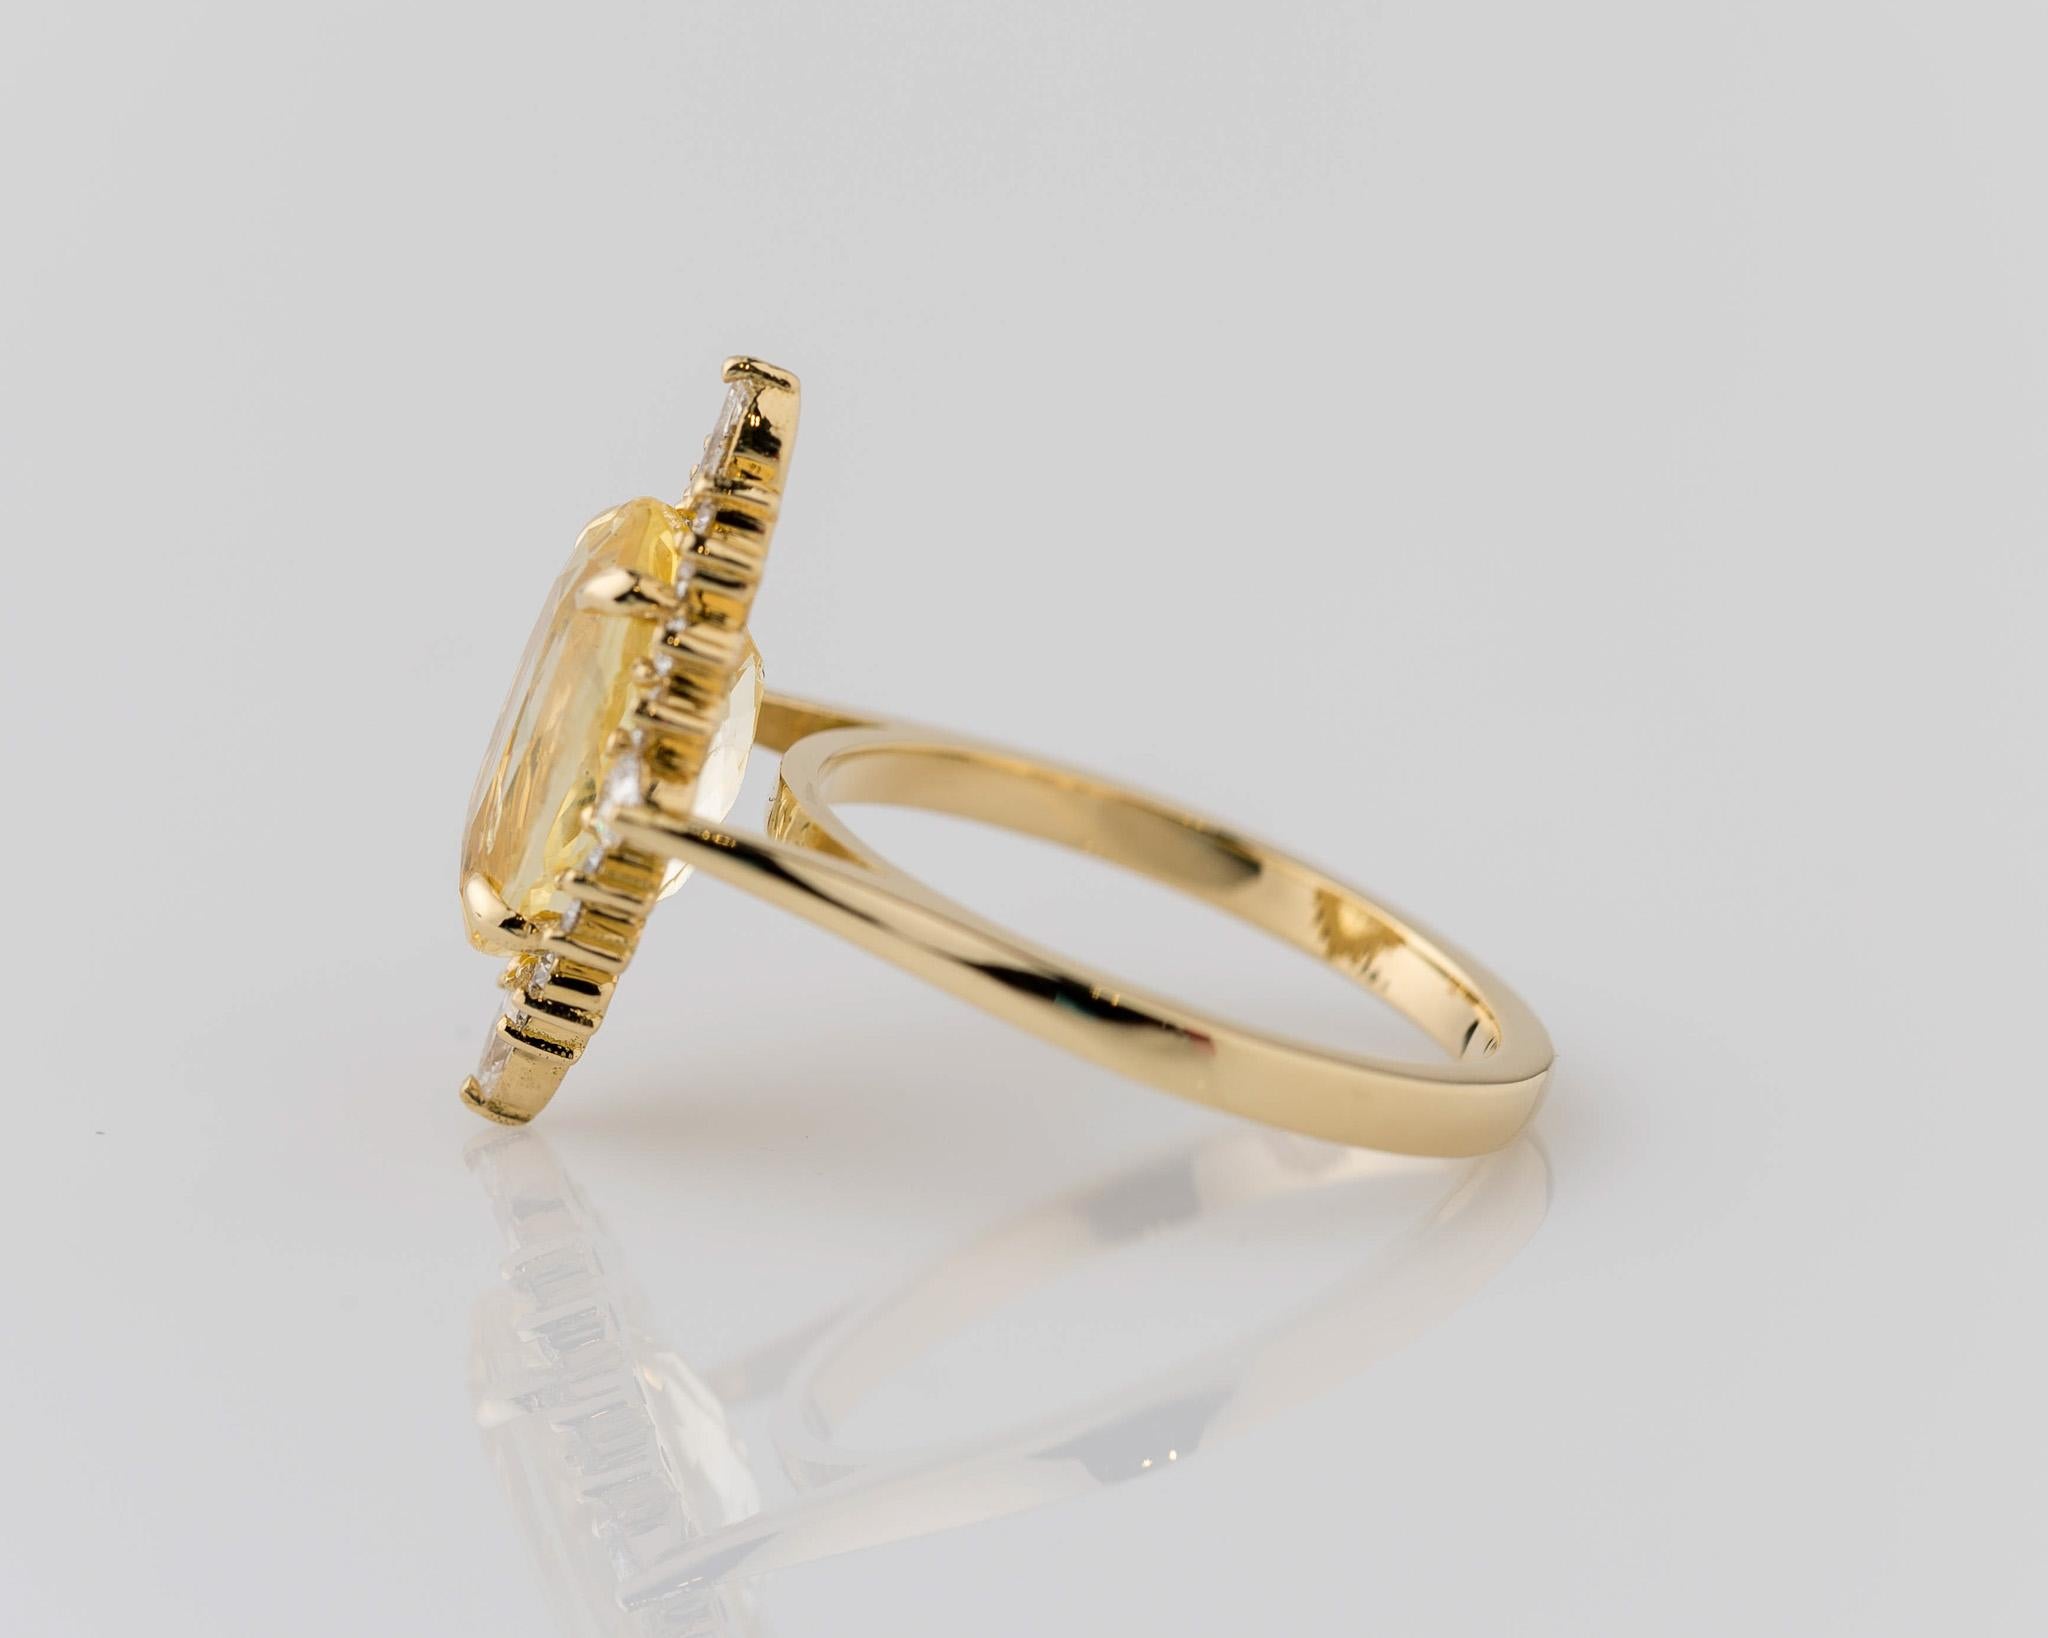 Lassen Sie sich von unserem atemberaubenden Ring aus 18 Karat Gelbgold mit einem gelben Saphir verzaubern, einem wahren Wunder der natürlichen Schönheit. Das Herzstück dieses Meisterwerks ist ein 11,37 x 7,17 mm großer, transparenter gelber Saphir